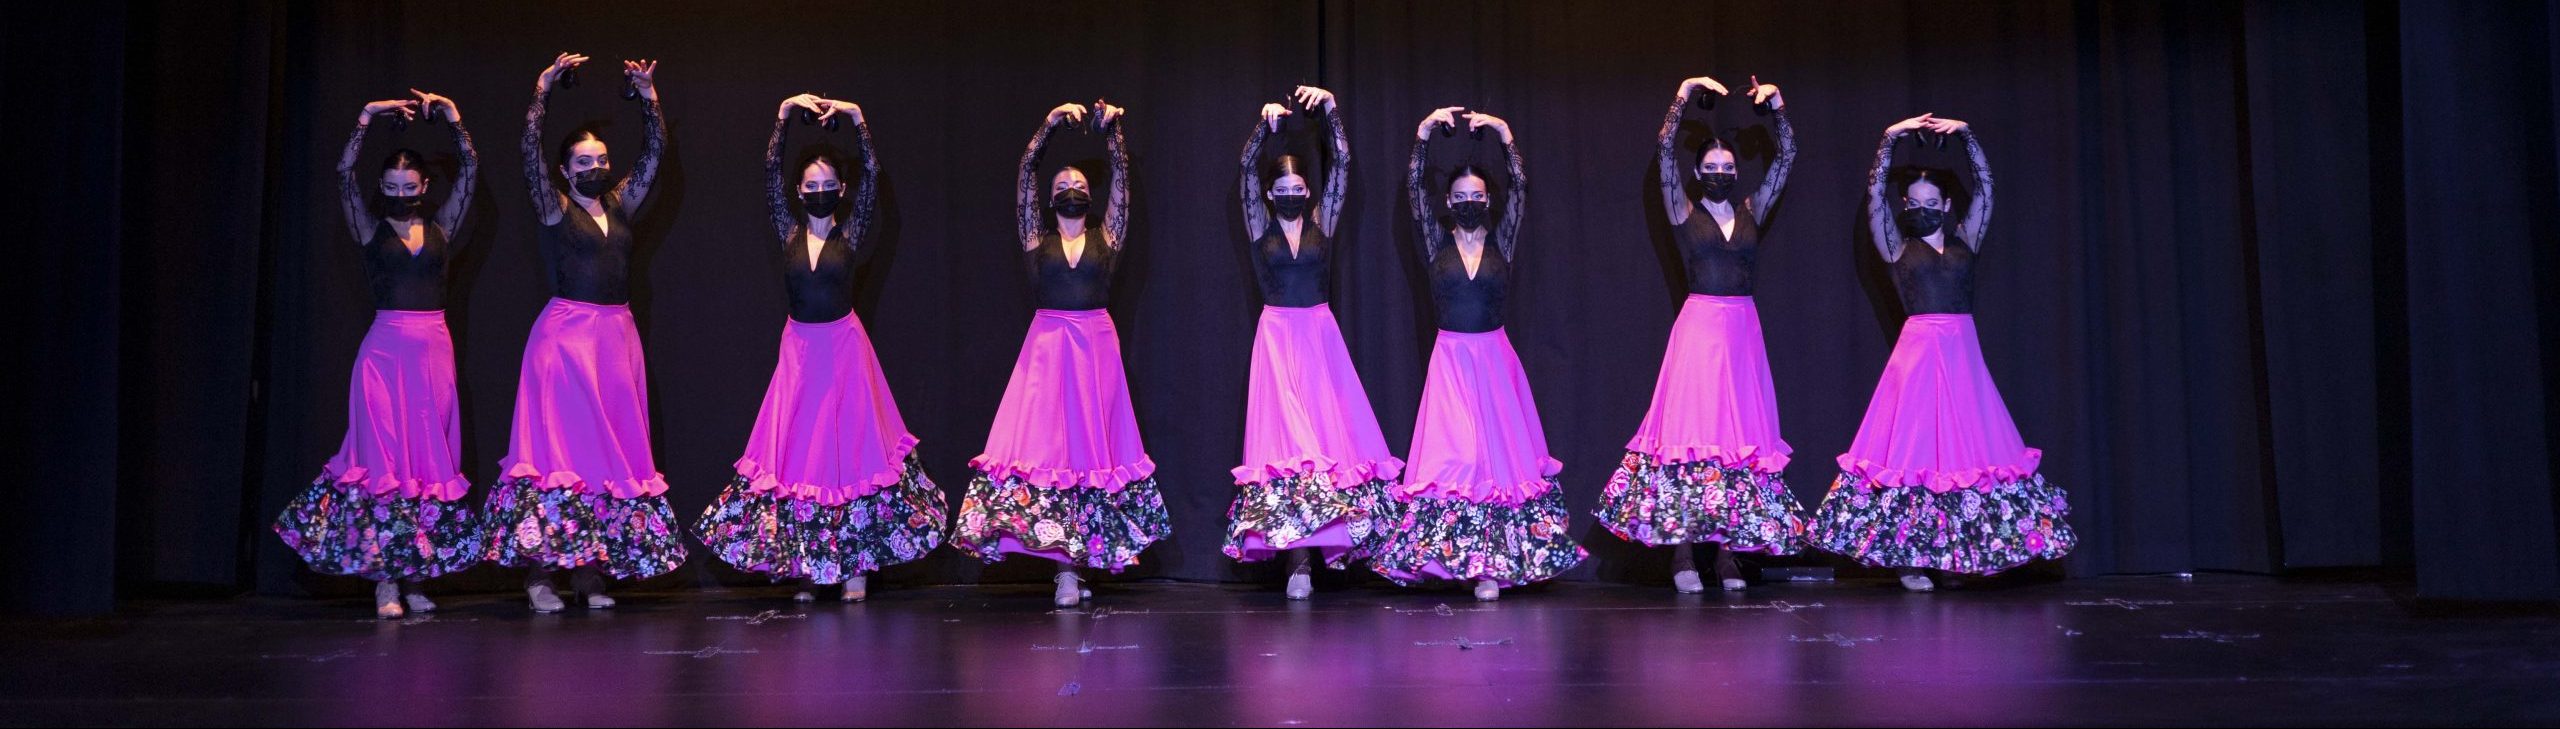 Conservatorio Profesional de Danza Maribel Gallardo